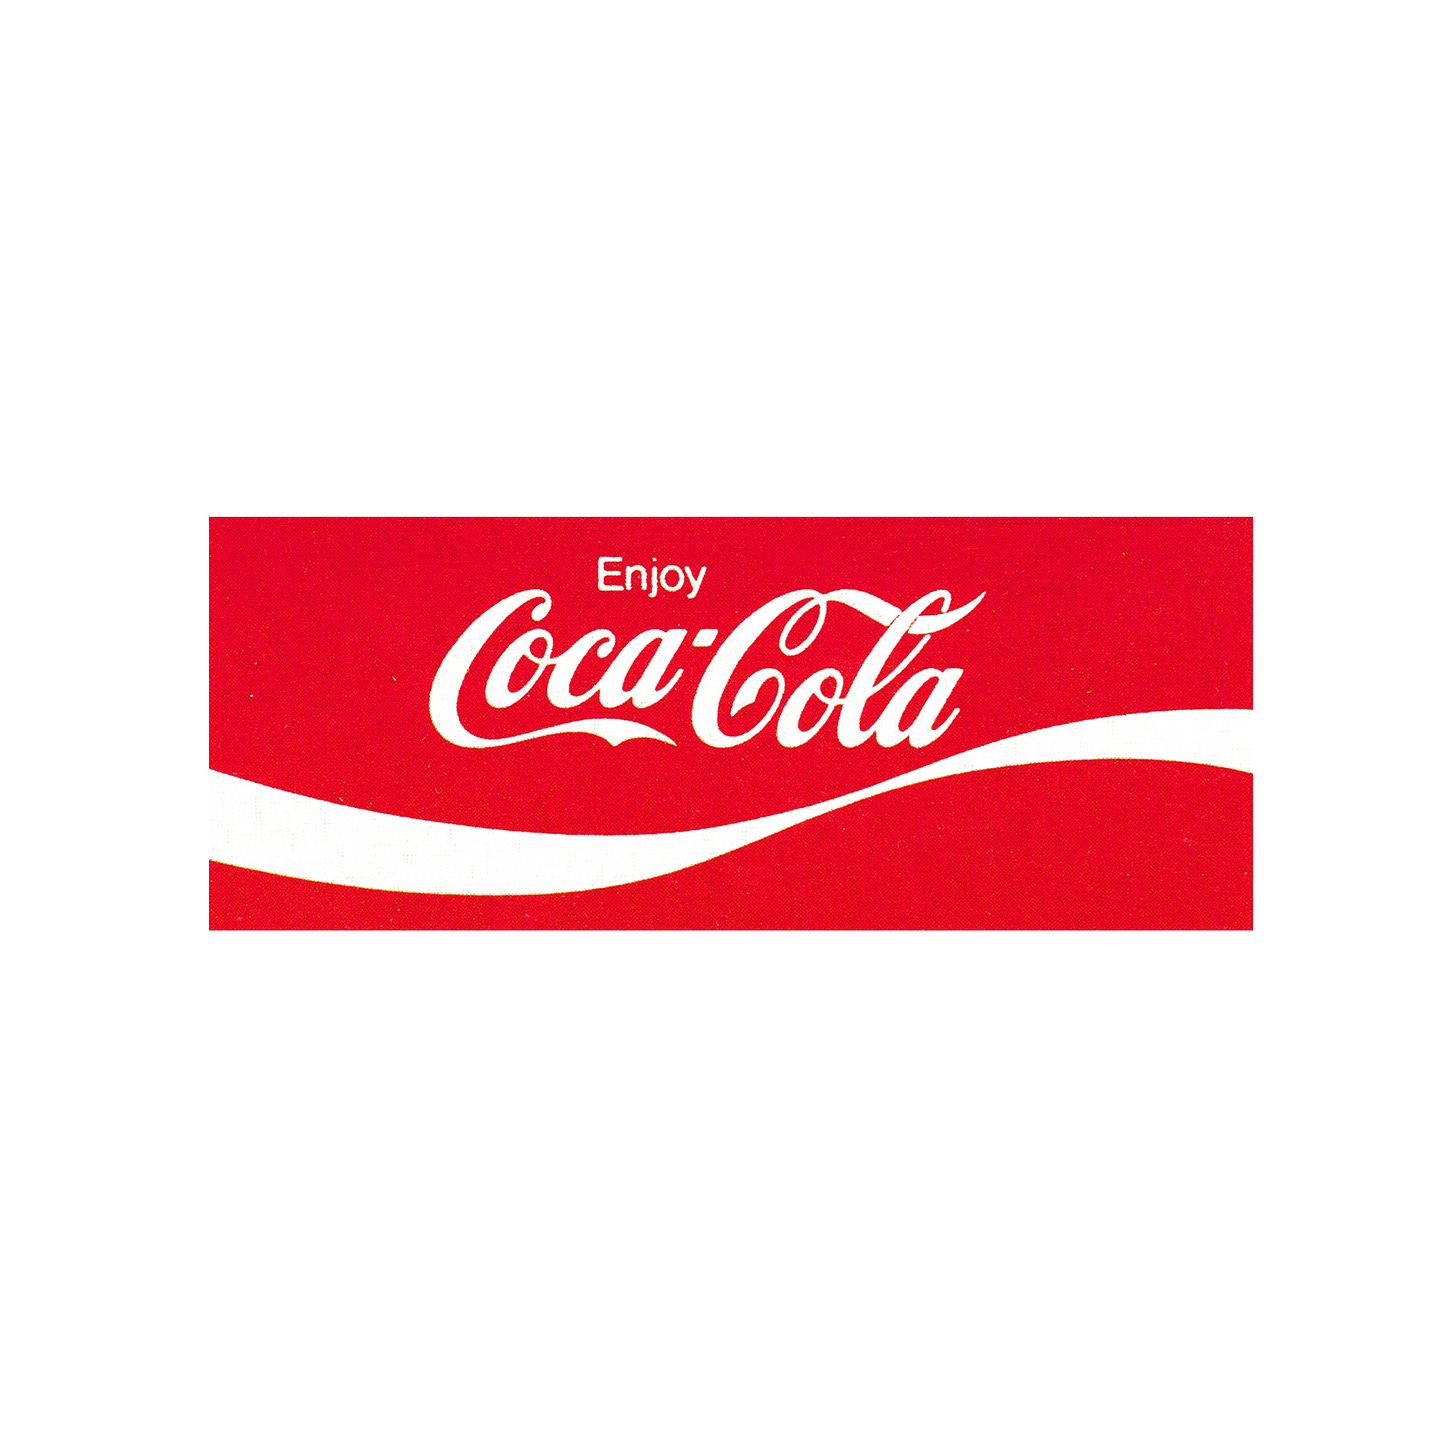 1969 Coca-cola blogo design, bottle contour curve